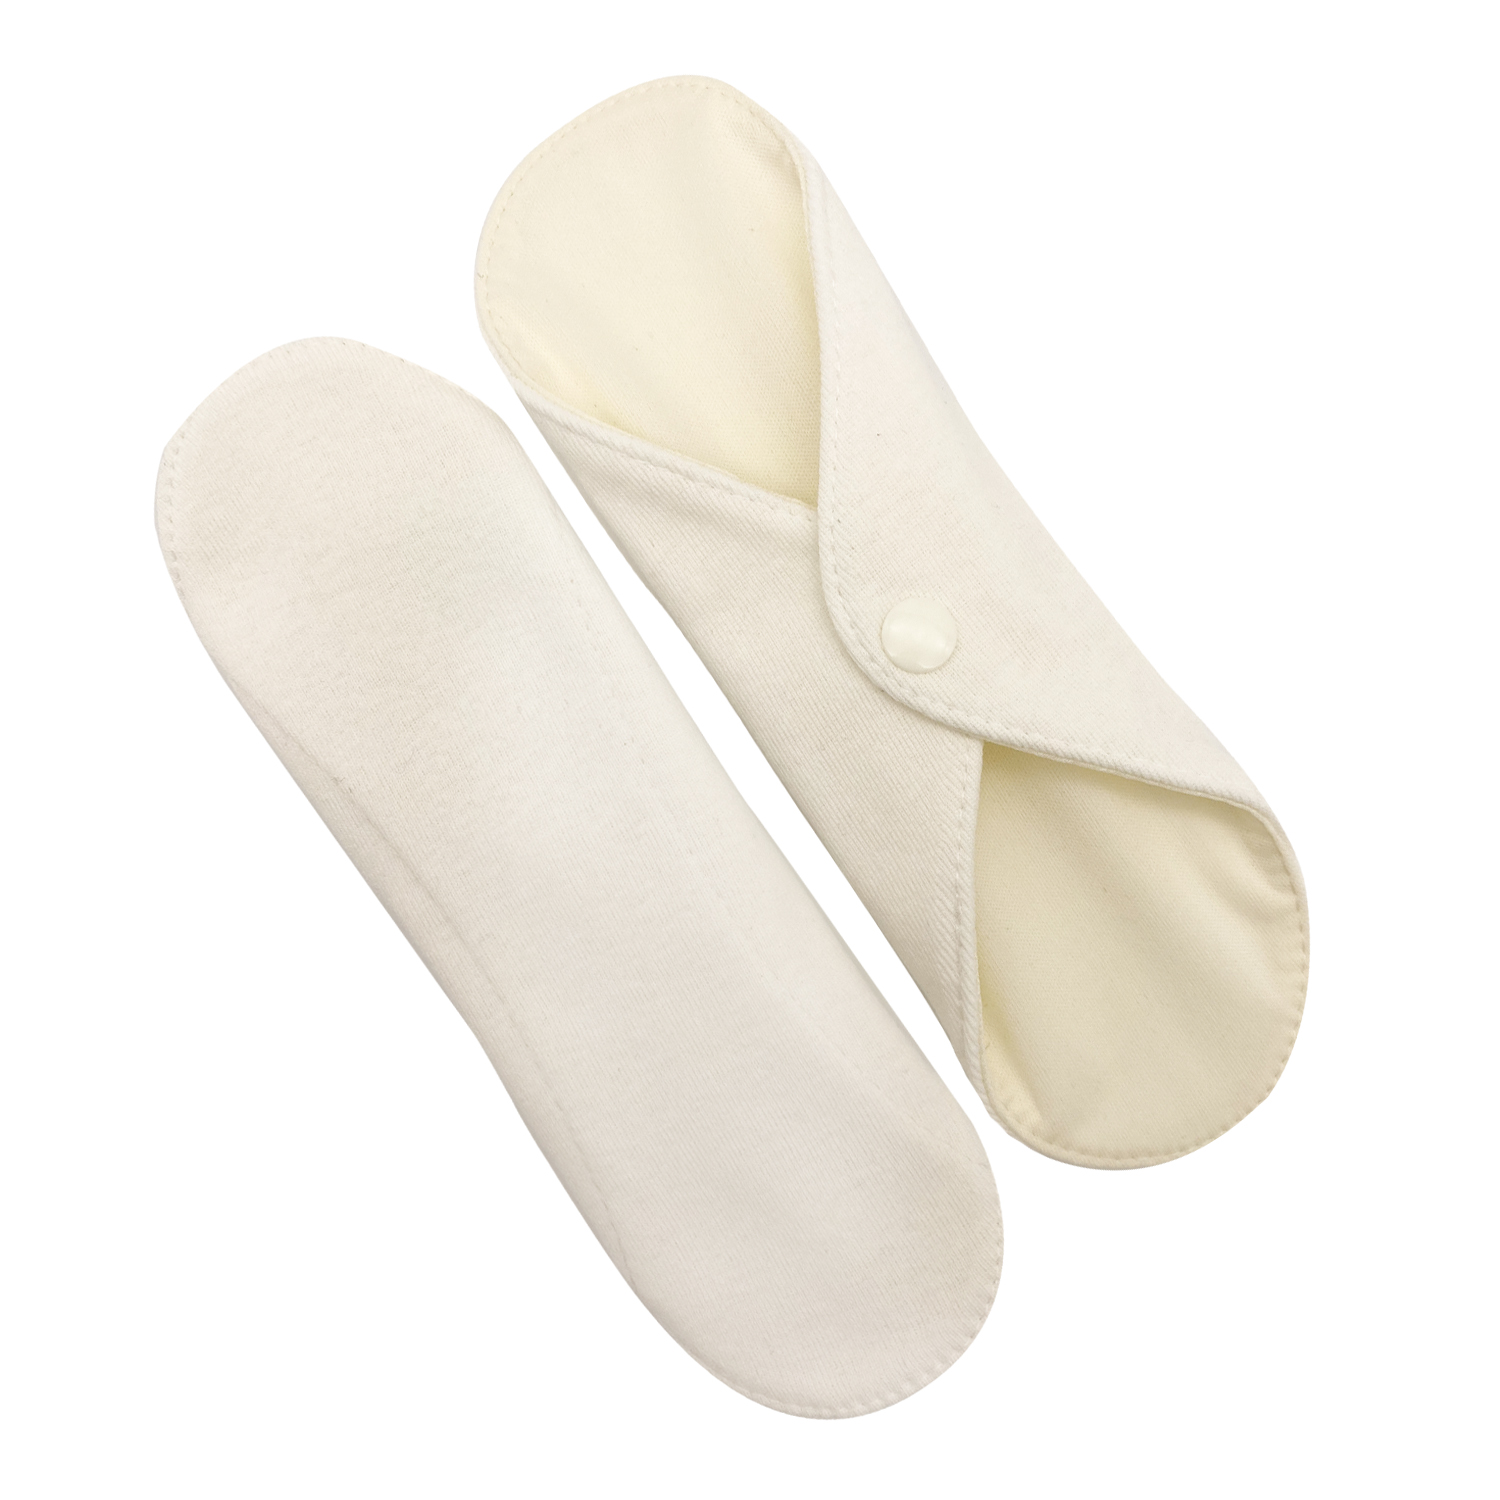 Прокладки для менструации многоразовые Mamalino бежевые набор 2 шт. размер Миди многоразовые прокладки mum s era f36995 флис комплект 5 шт